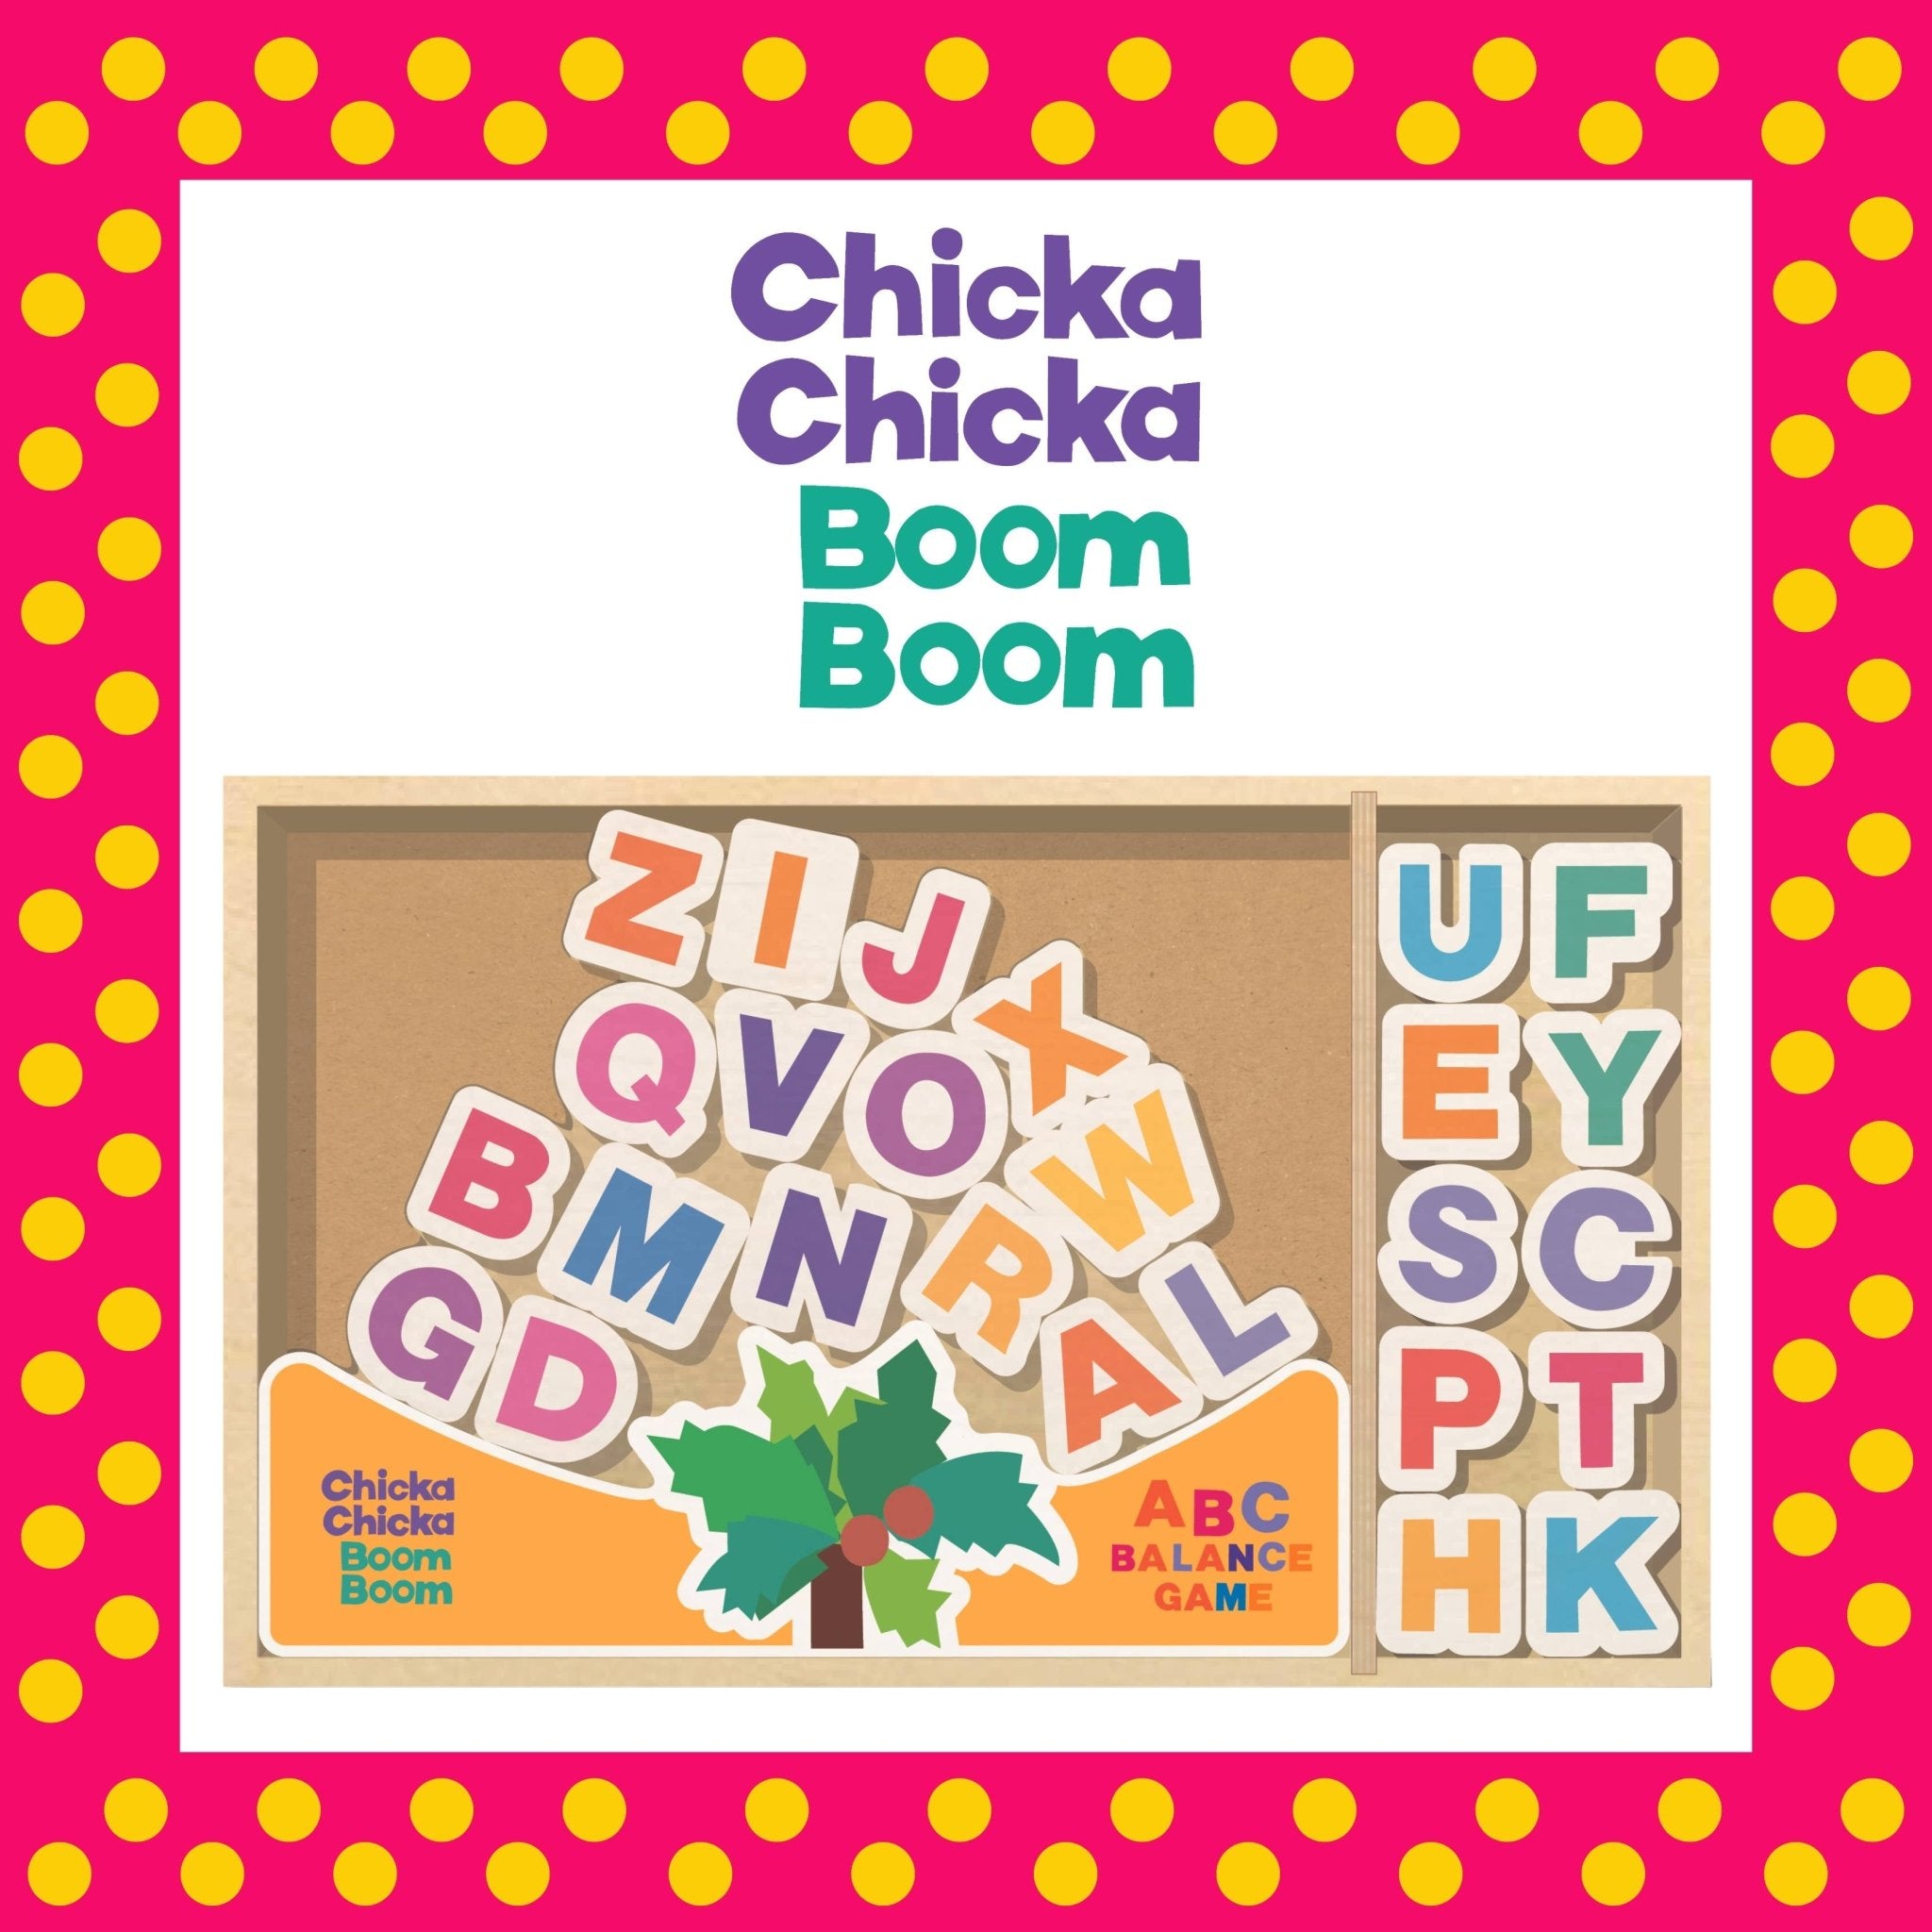 Chicka Chicka Boom Boom - ABC Balance Game - SuperMom Headquarters